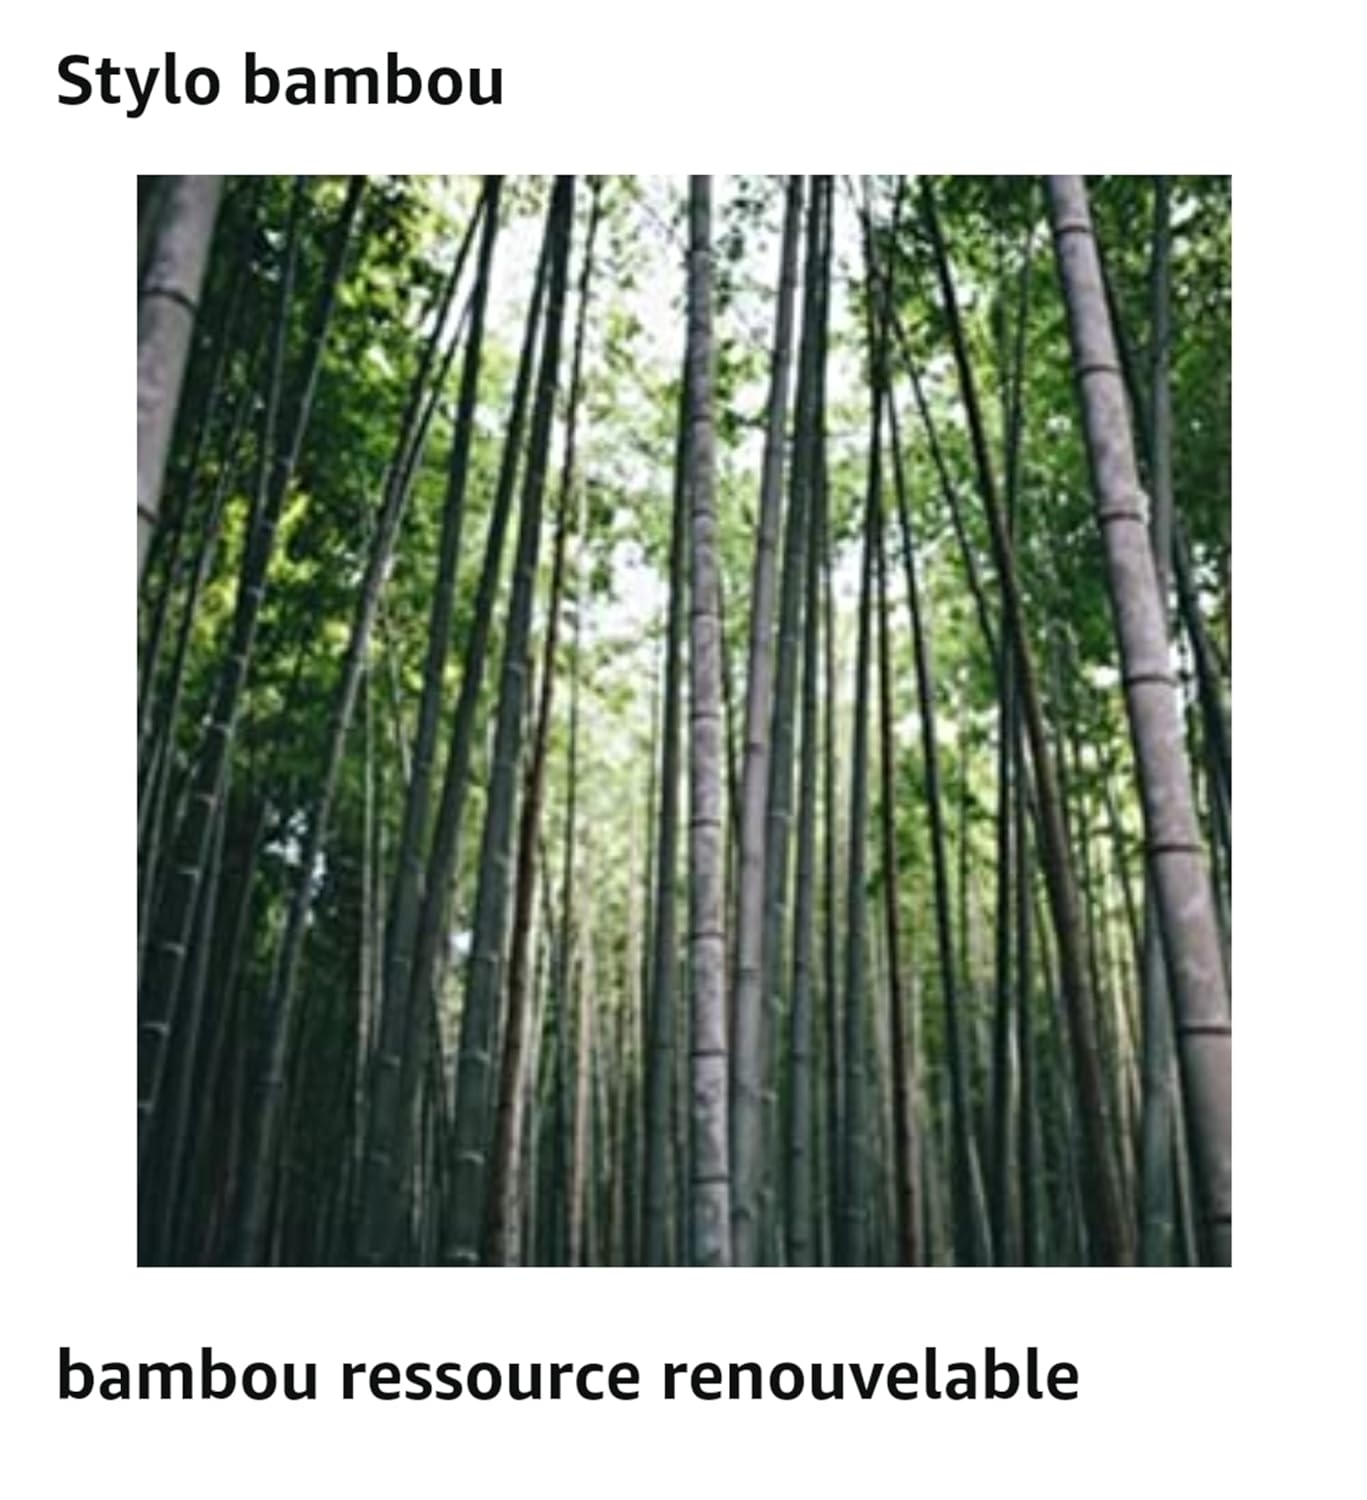 Coffret stylo/crayon personnalisés bambou - Bambowie